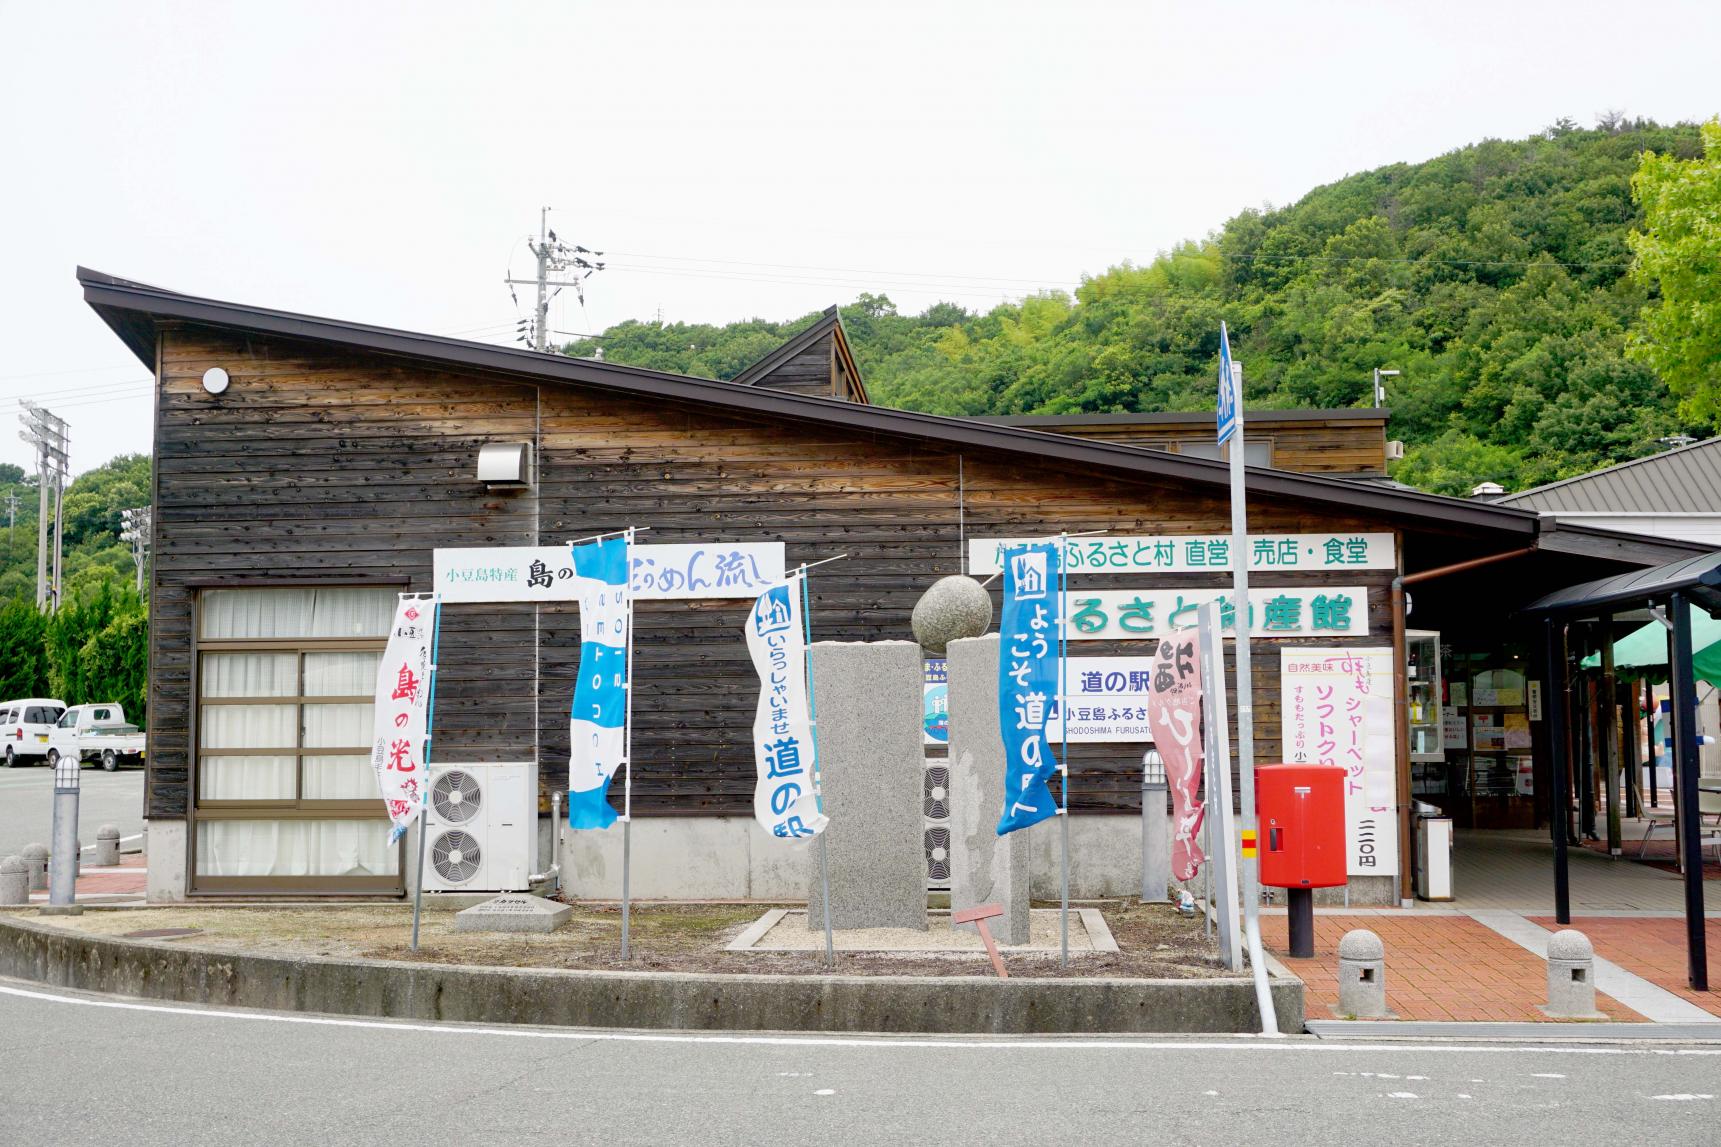 จุดพักรถหมู่บ้านฟุรุซาโตะมุระ-1